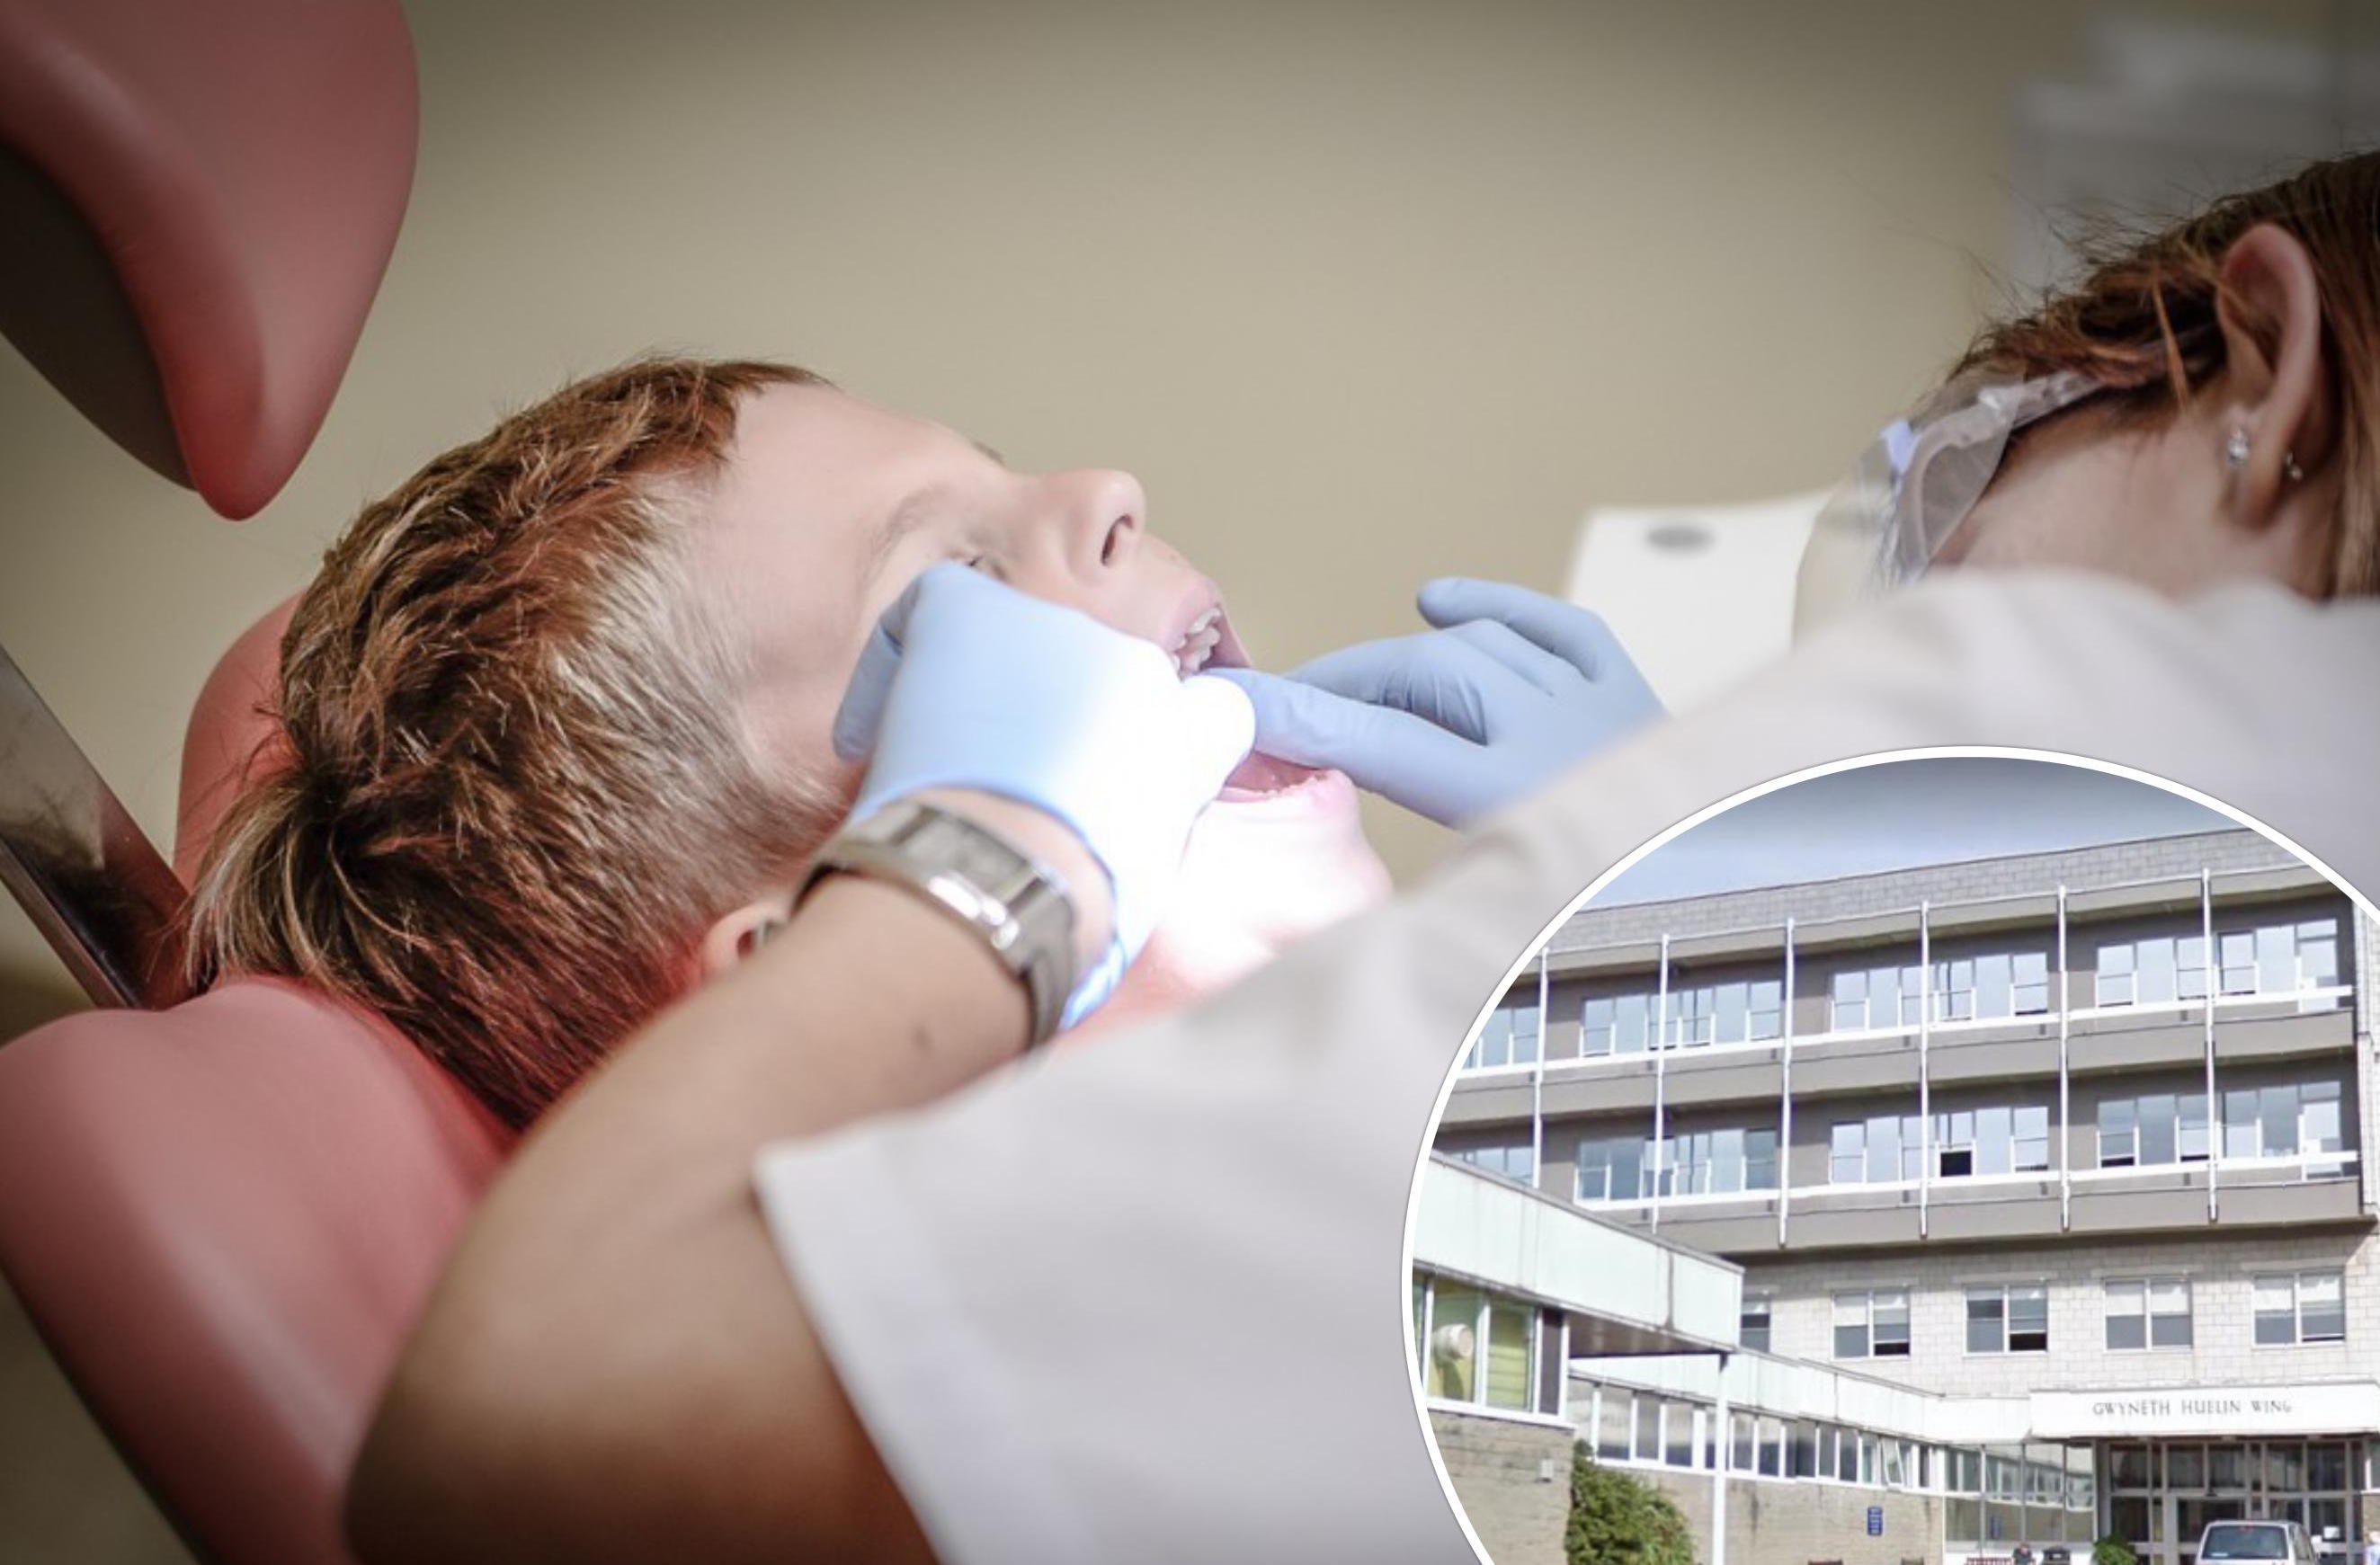 hospital dentist dental orthodontist orthodontic teeth tooth braces